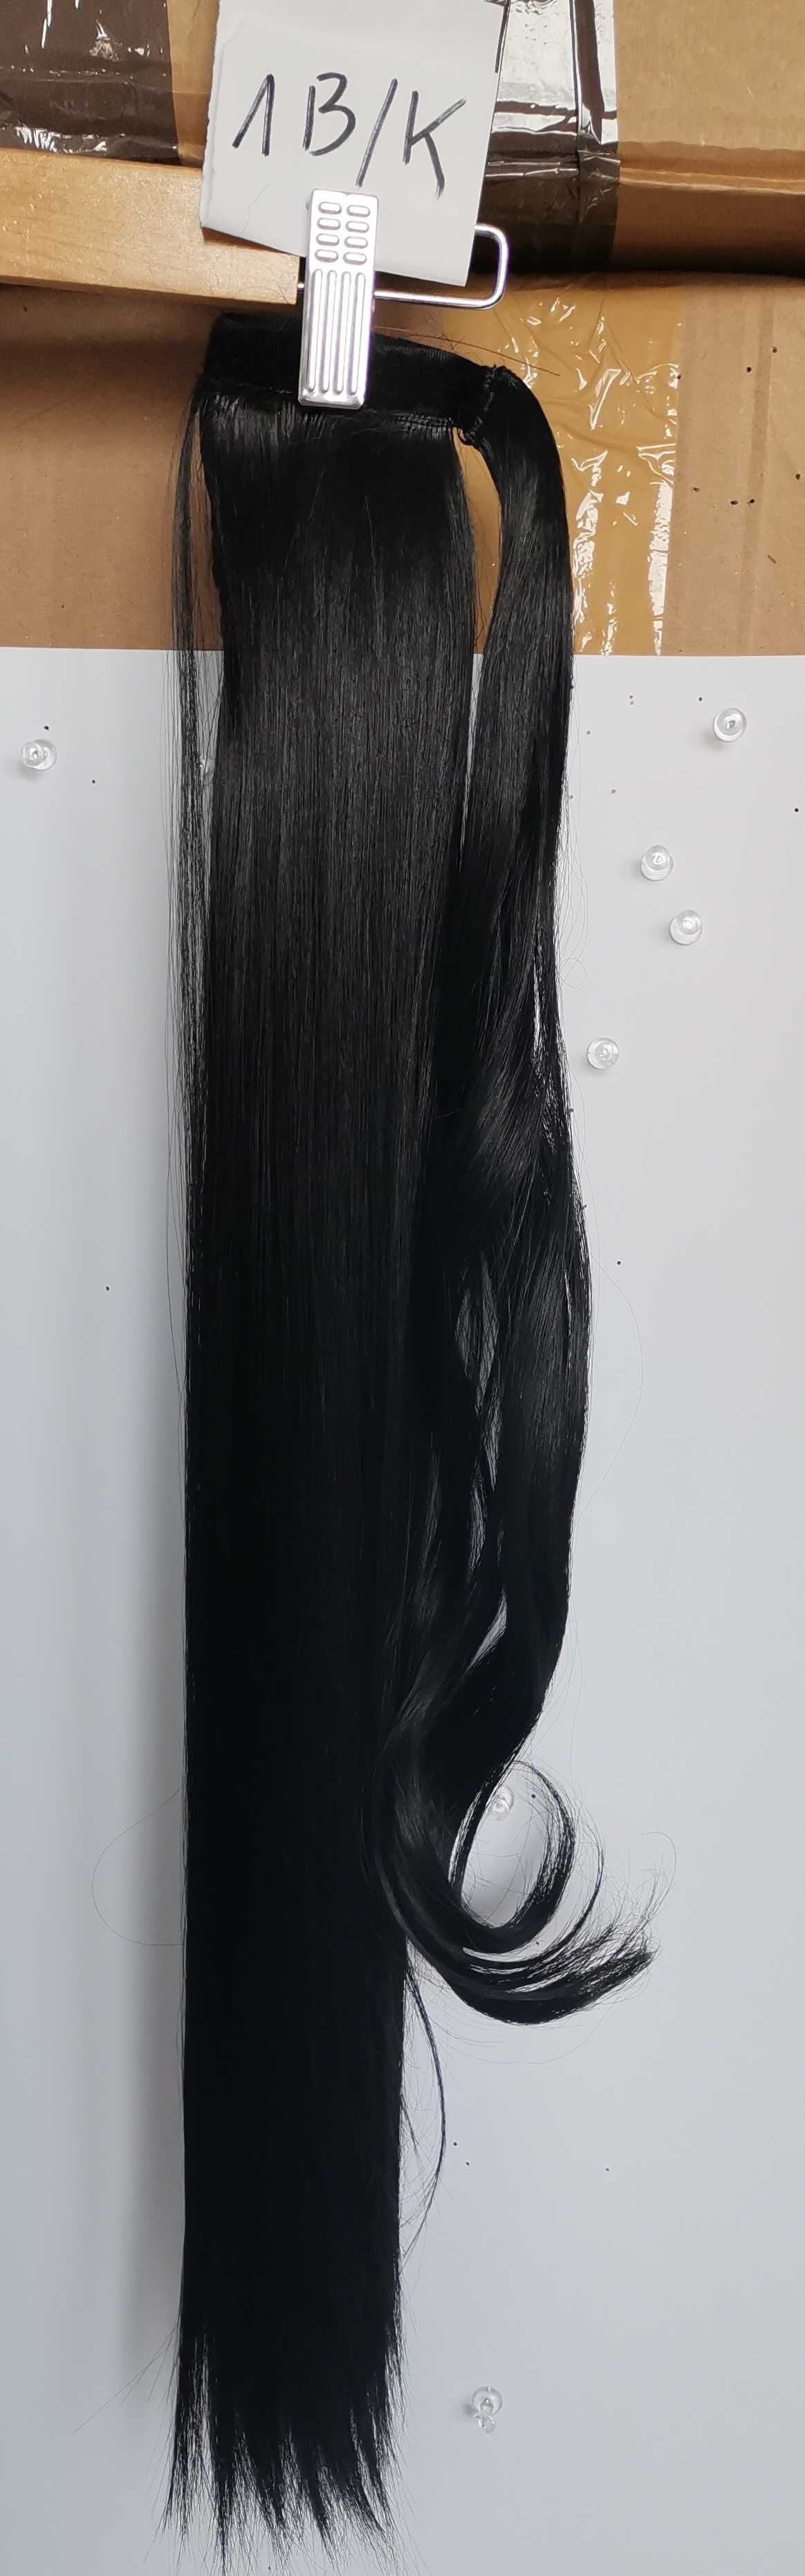 Doczepiane włosy, treska, kucyk czarny 1b 60 cm